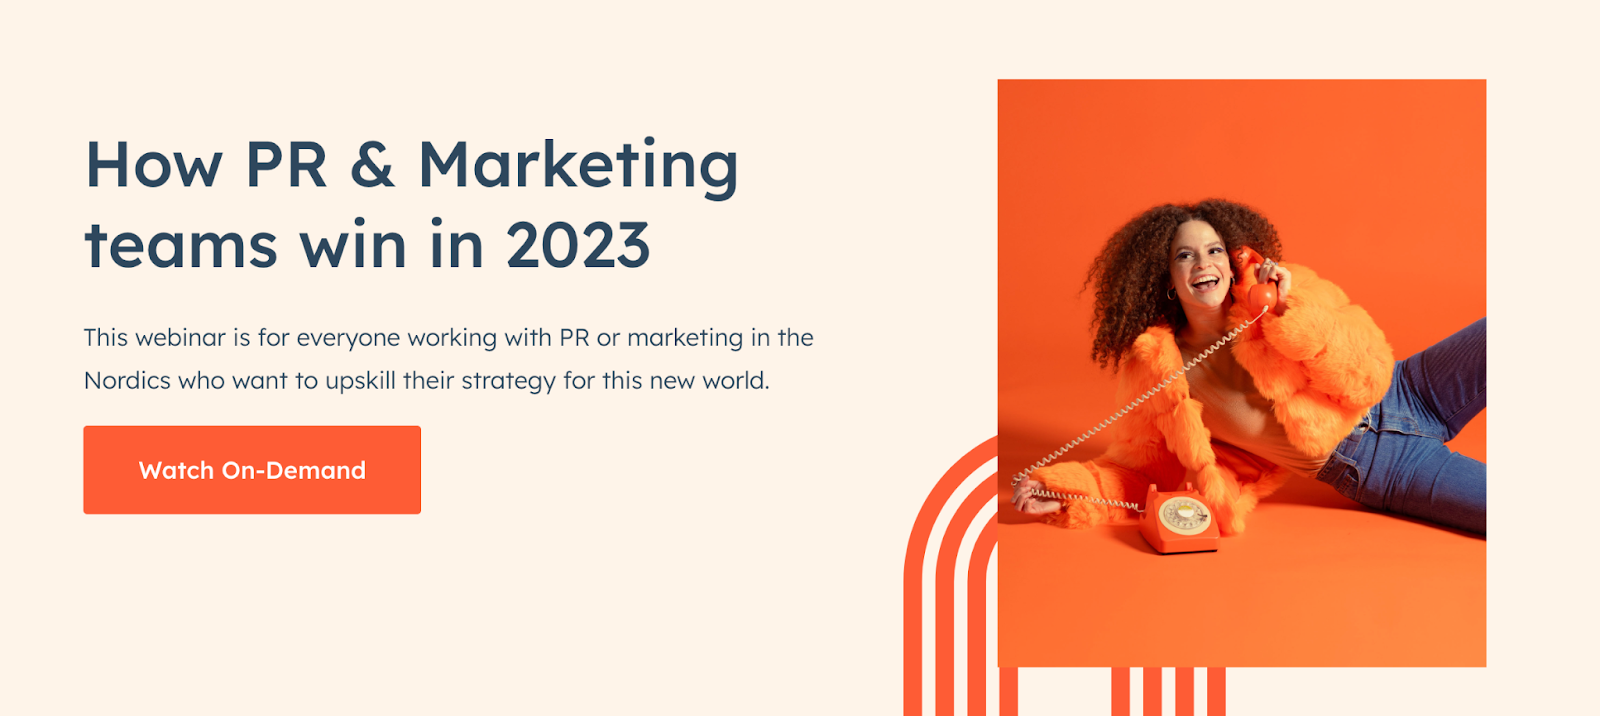 Título del seminario web-Cómo ganarán los equipos de relaciones públicas y marketing en 2023